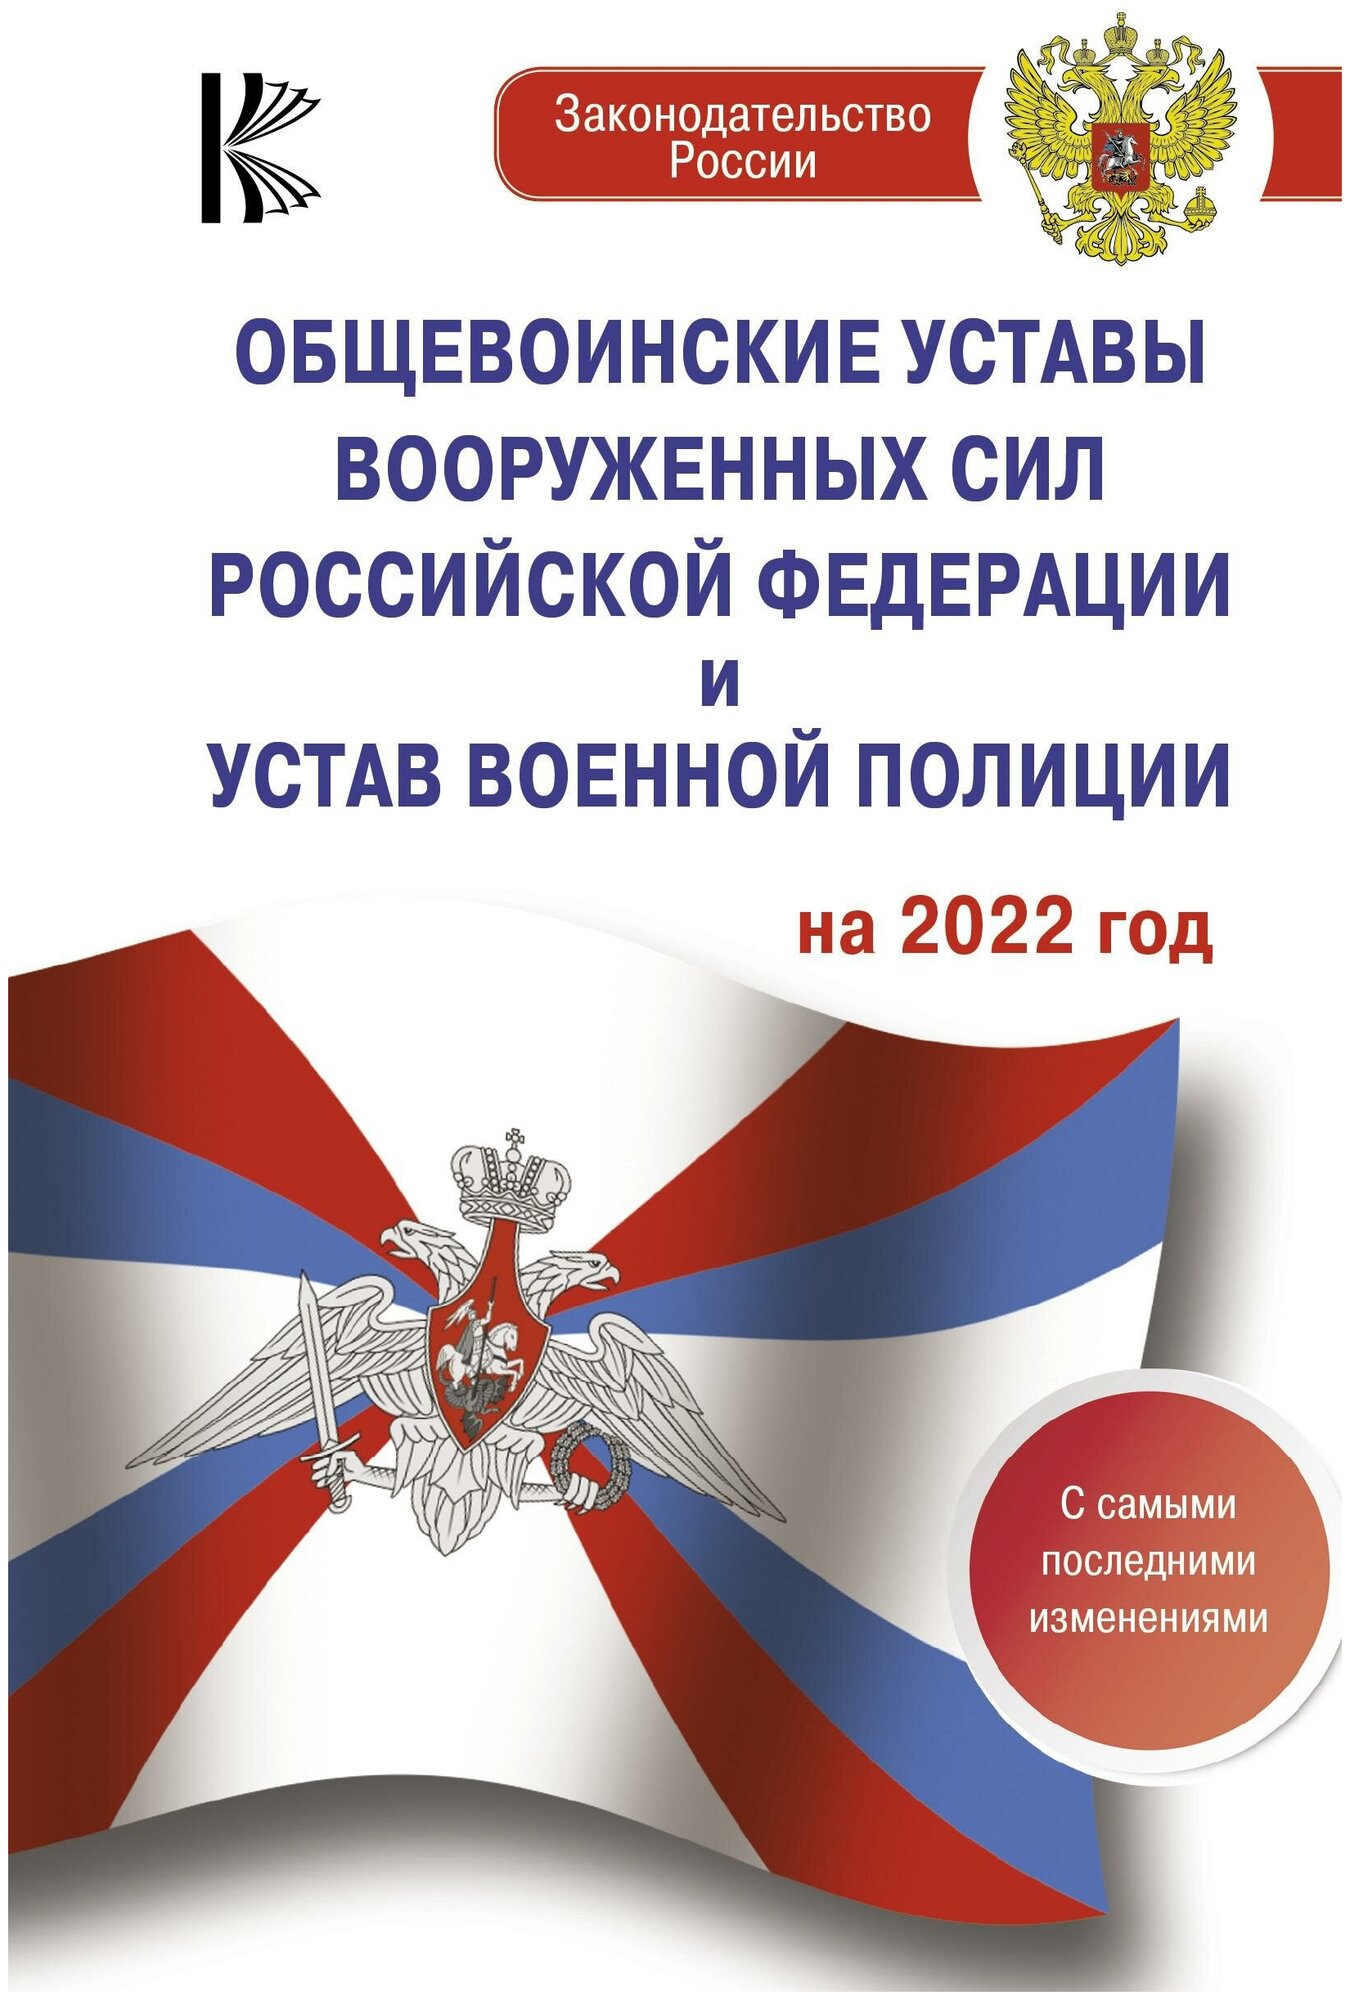 Общевоинские уставы Вооруженных Сил Российской Федерации на 2022 год - фото №1